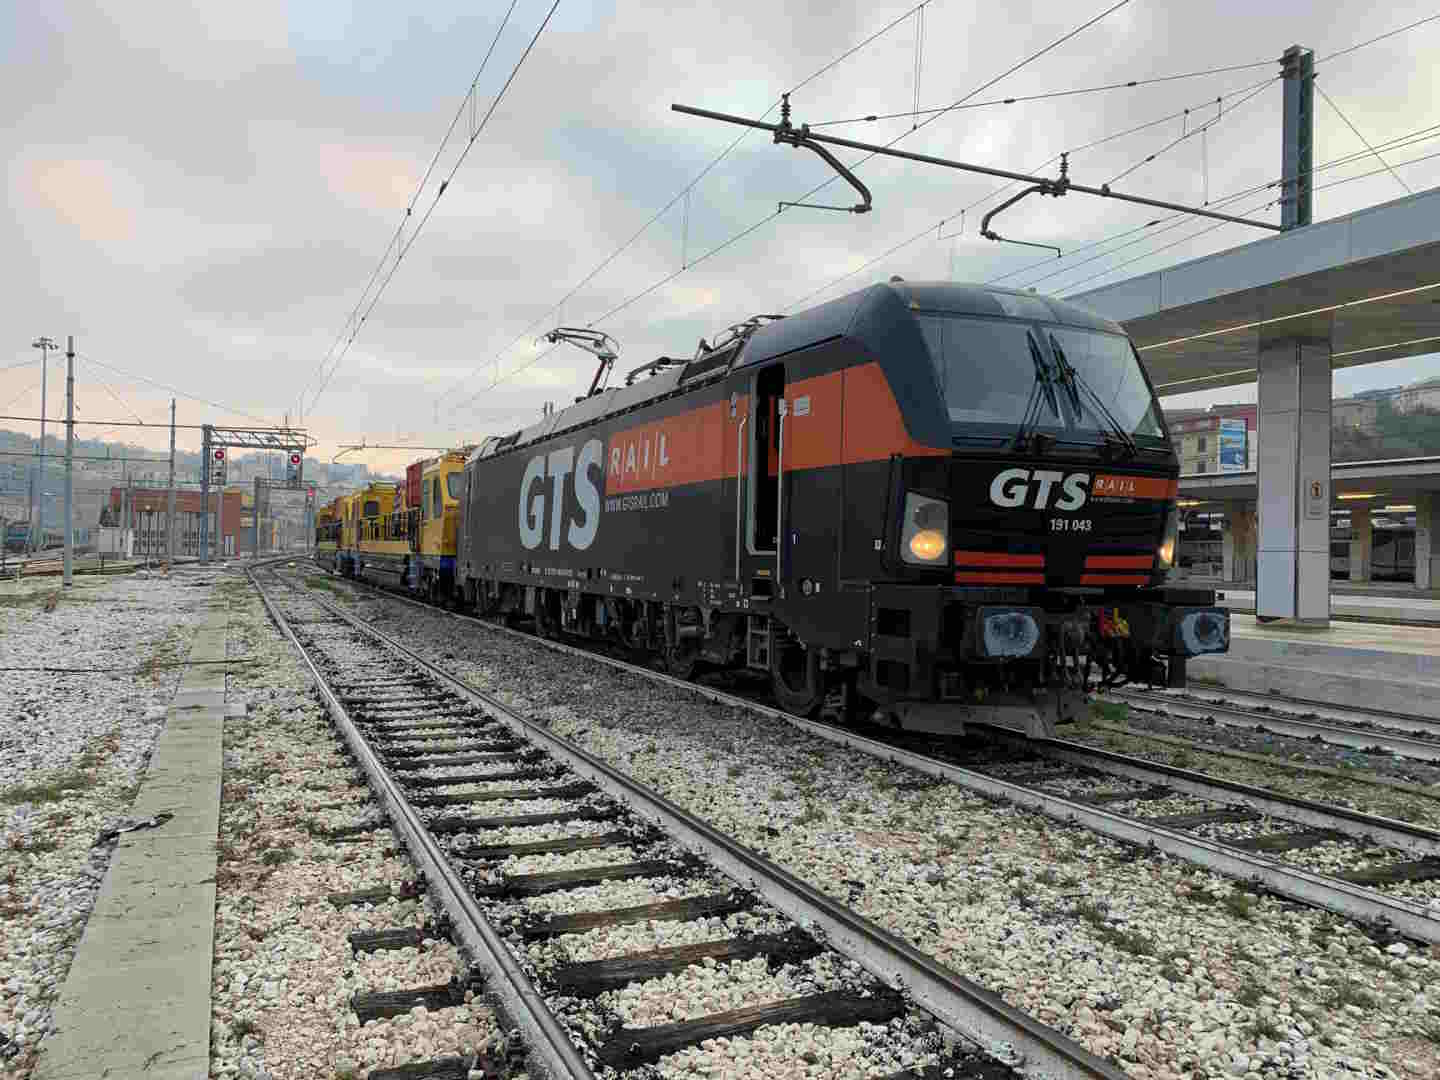 Gts lancia un nuovo servizio ferroviario merci Bari-Nola